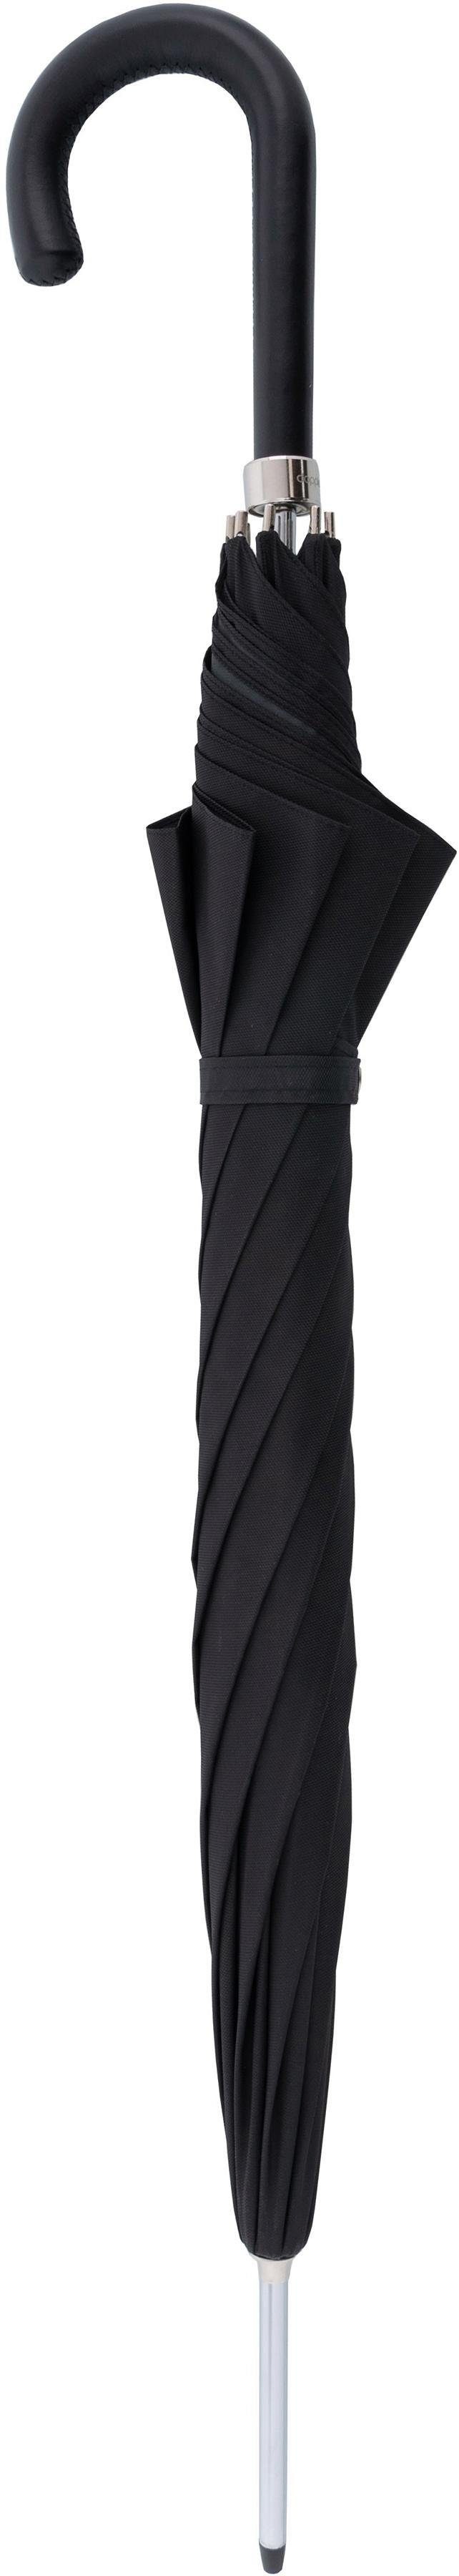 doppler MANUFAKTUR Stockregenschirm Oxford schwarz, Uni, handgemachter Manufaktur-Stockschirm